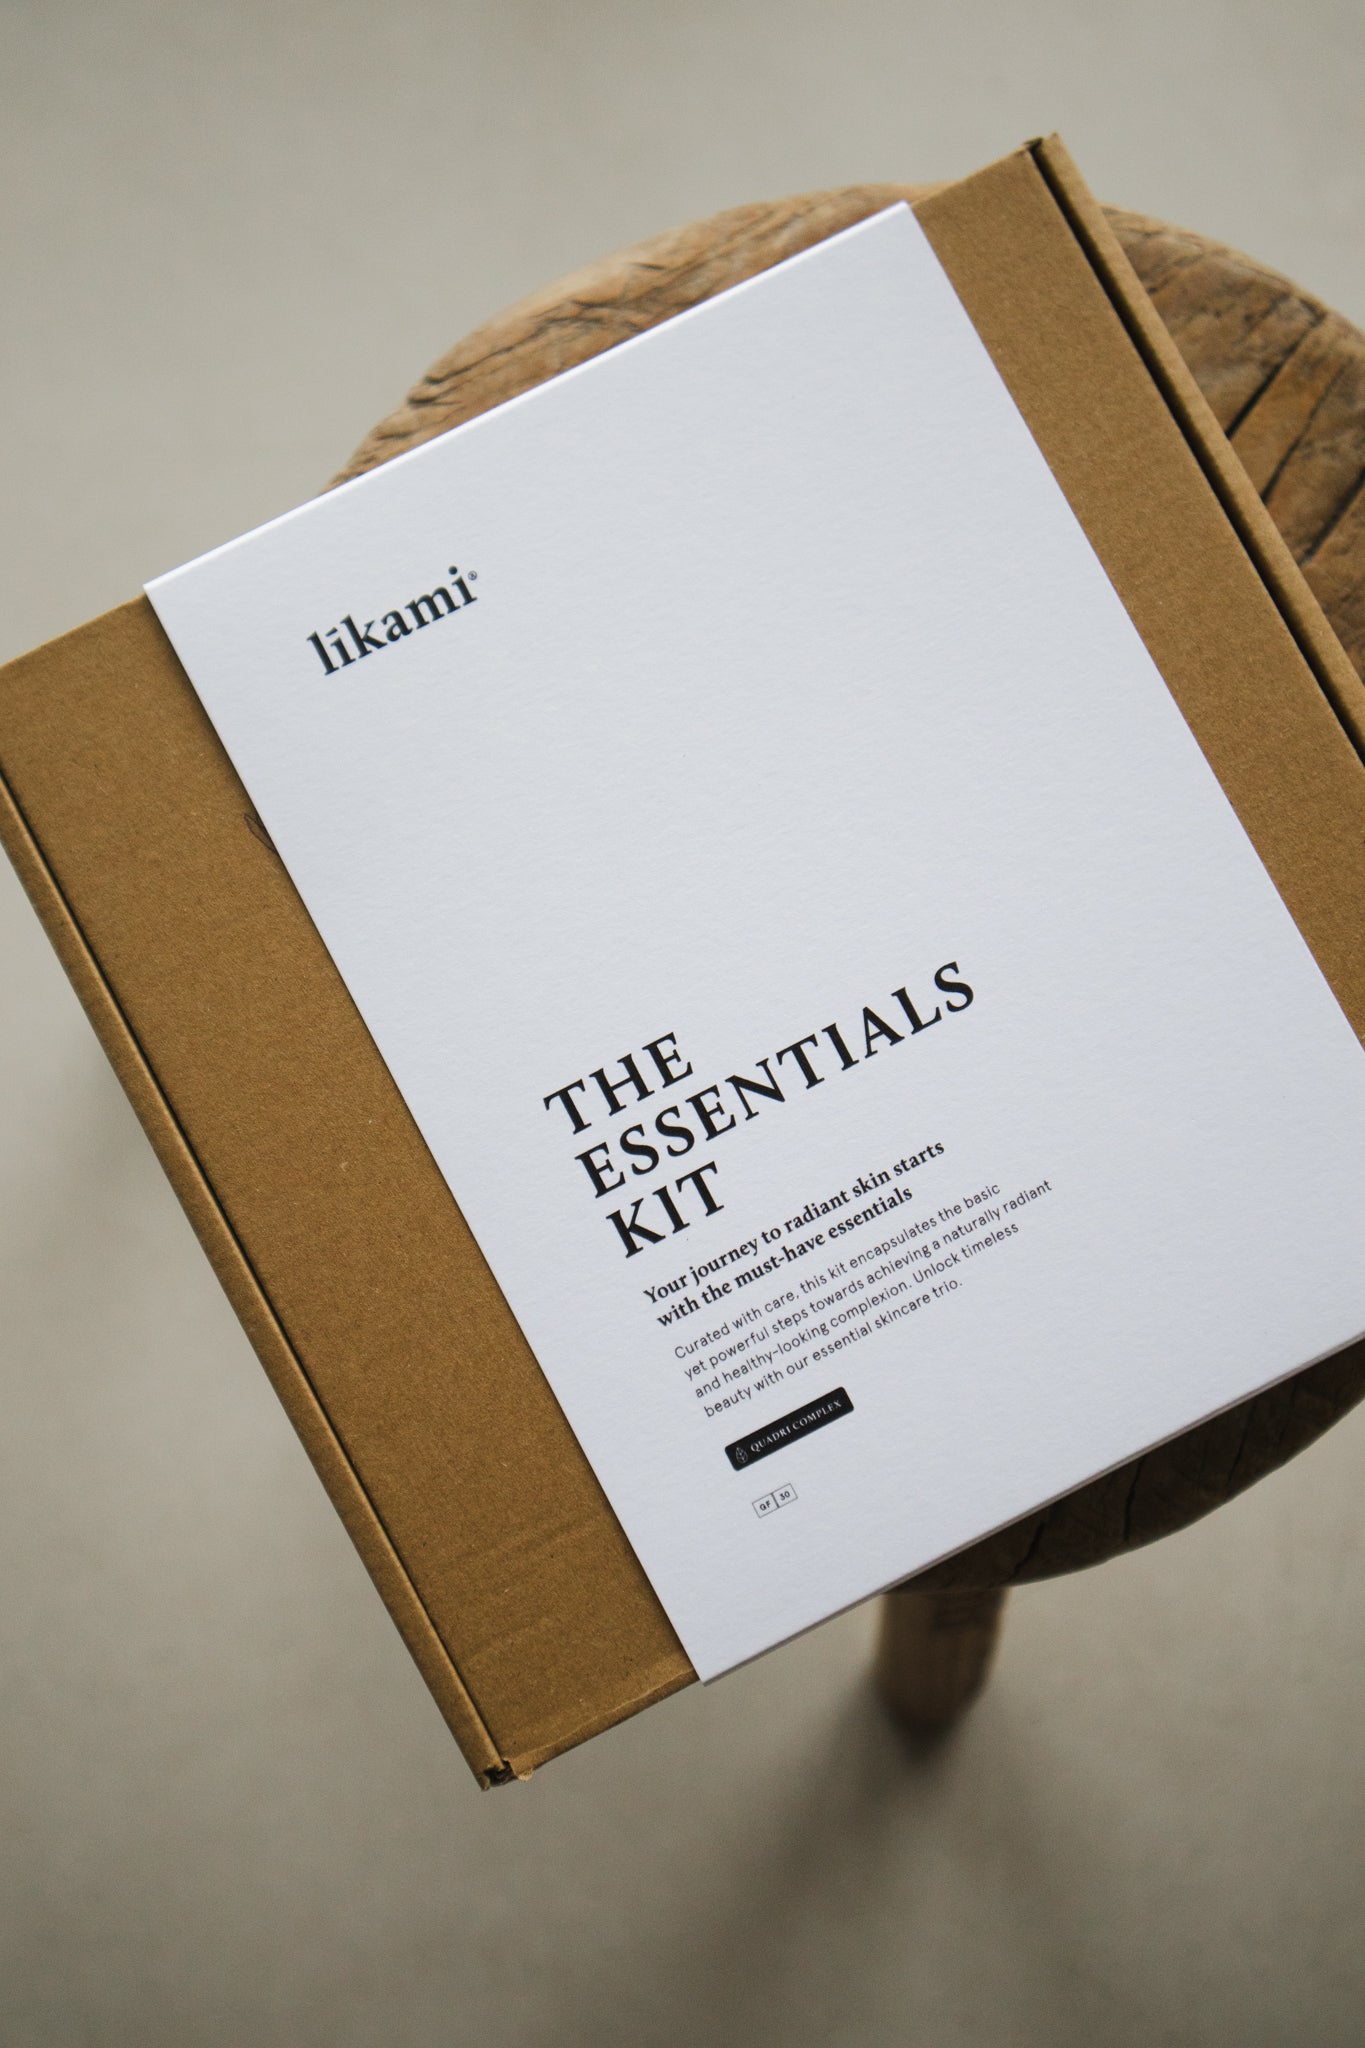 NEW! Likami The Essentials Kit